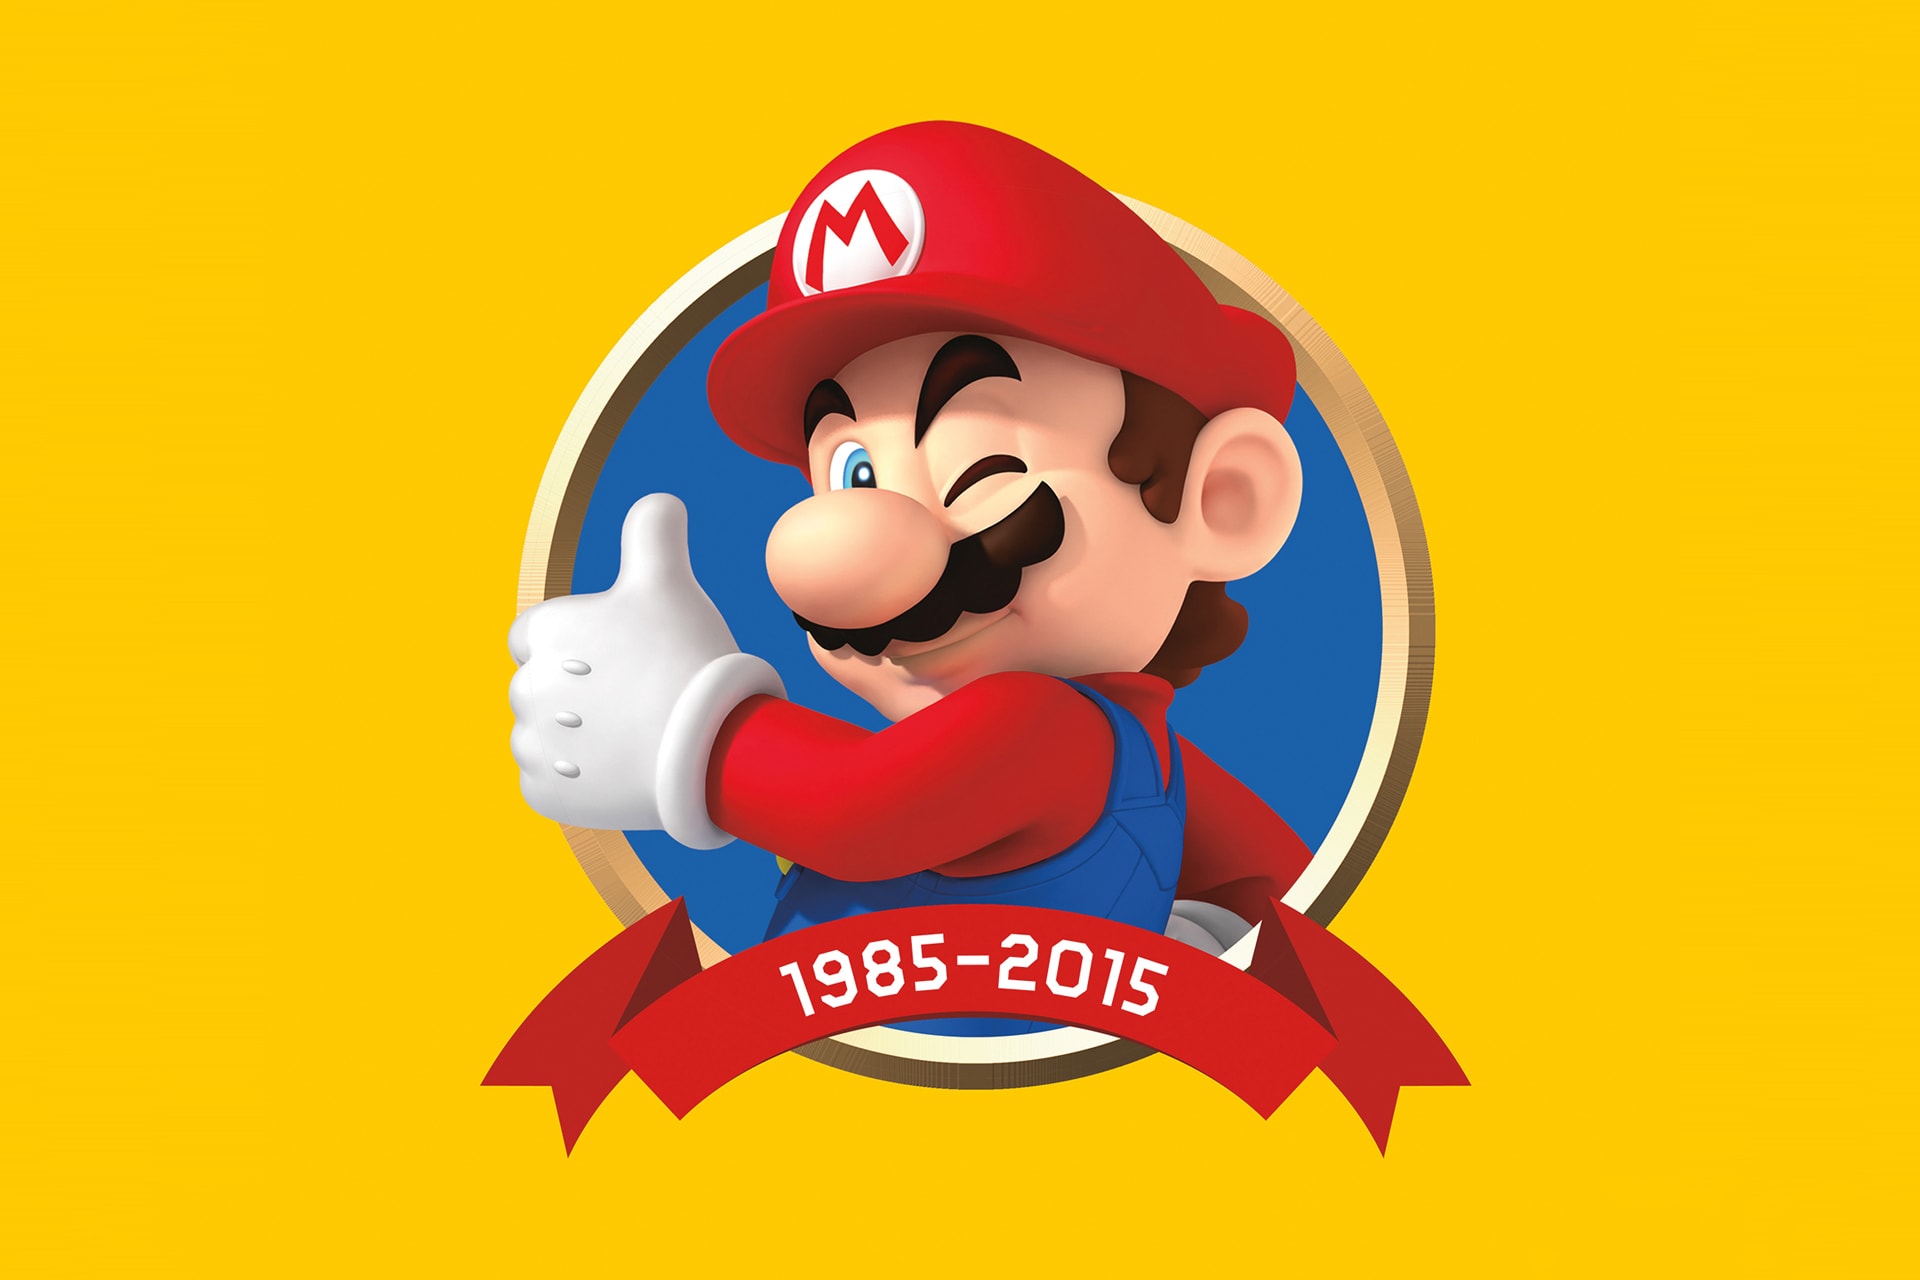 Mario 系列游戏百科全书《Super Mario Encyclopedia》